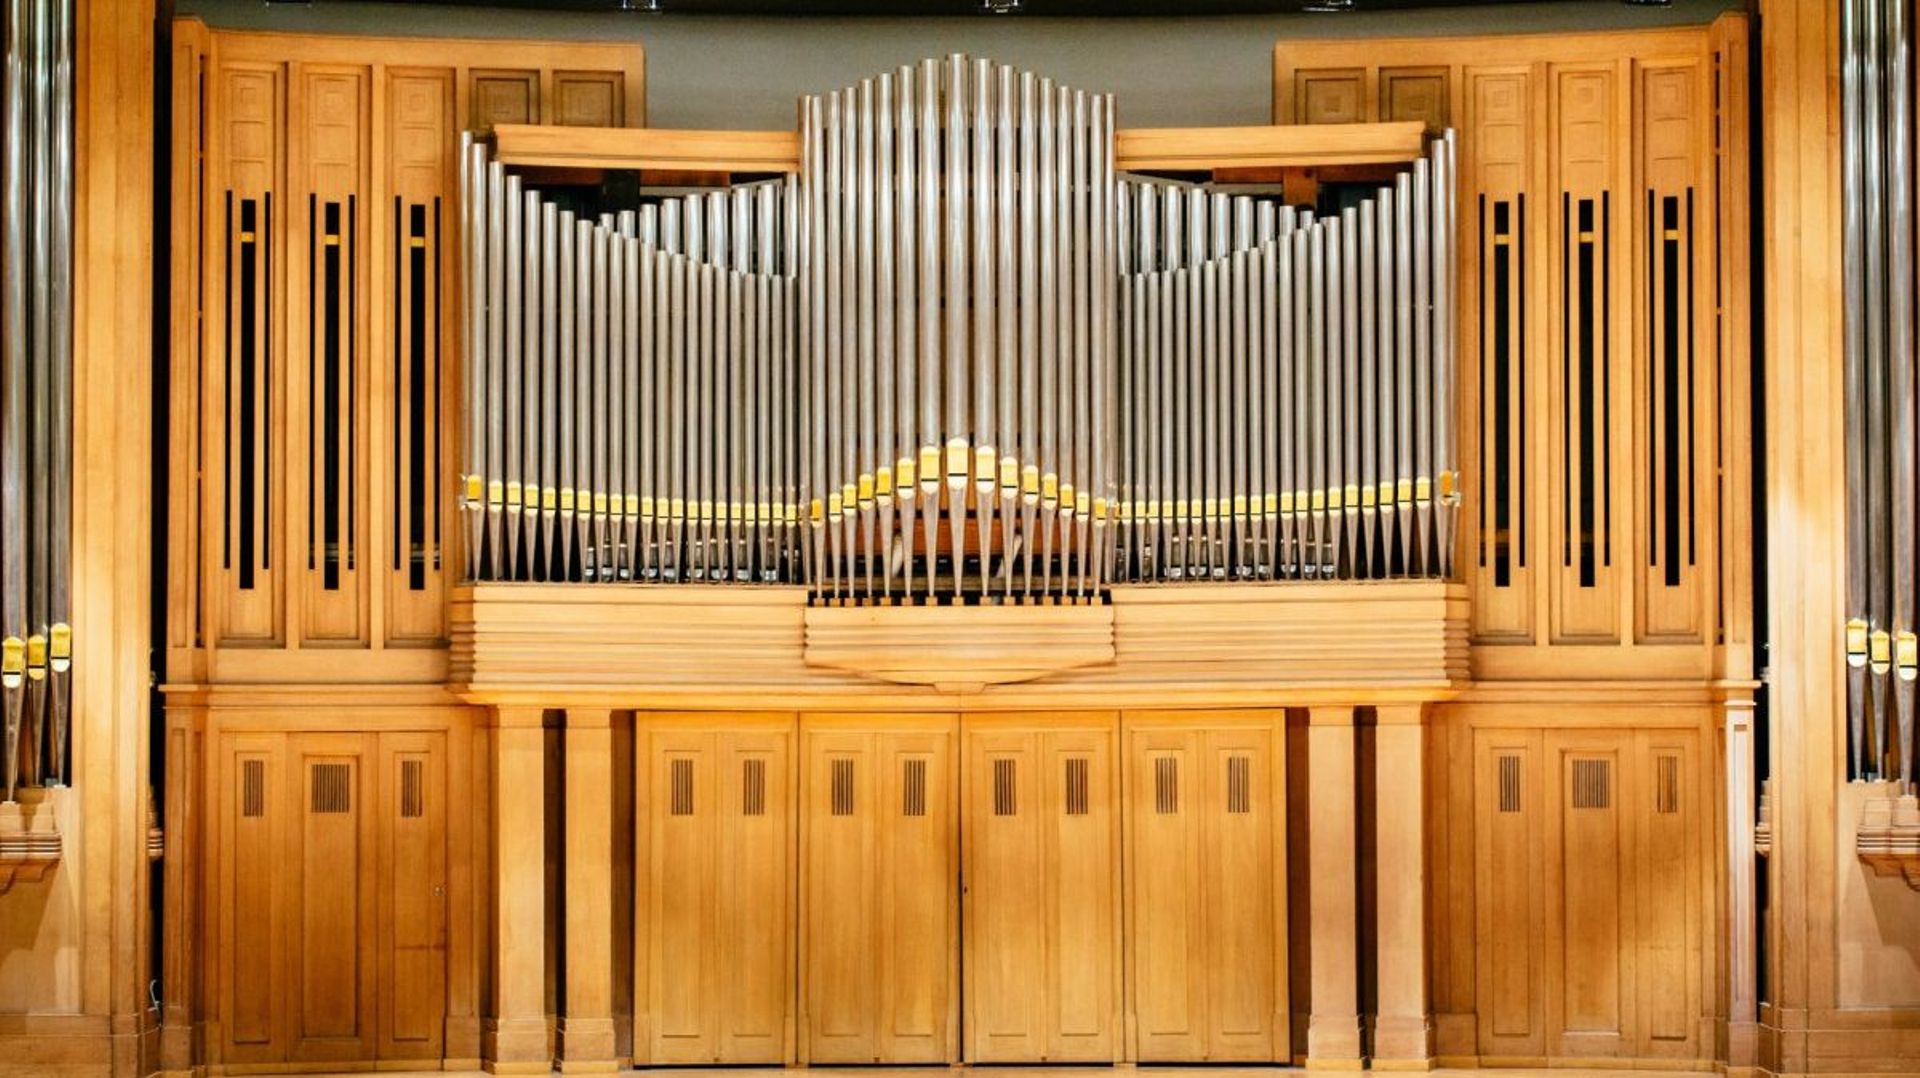 Le grand orgue du Palais des Beaux-arts de Bruxelles